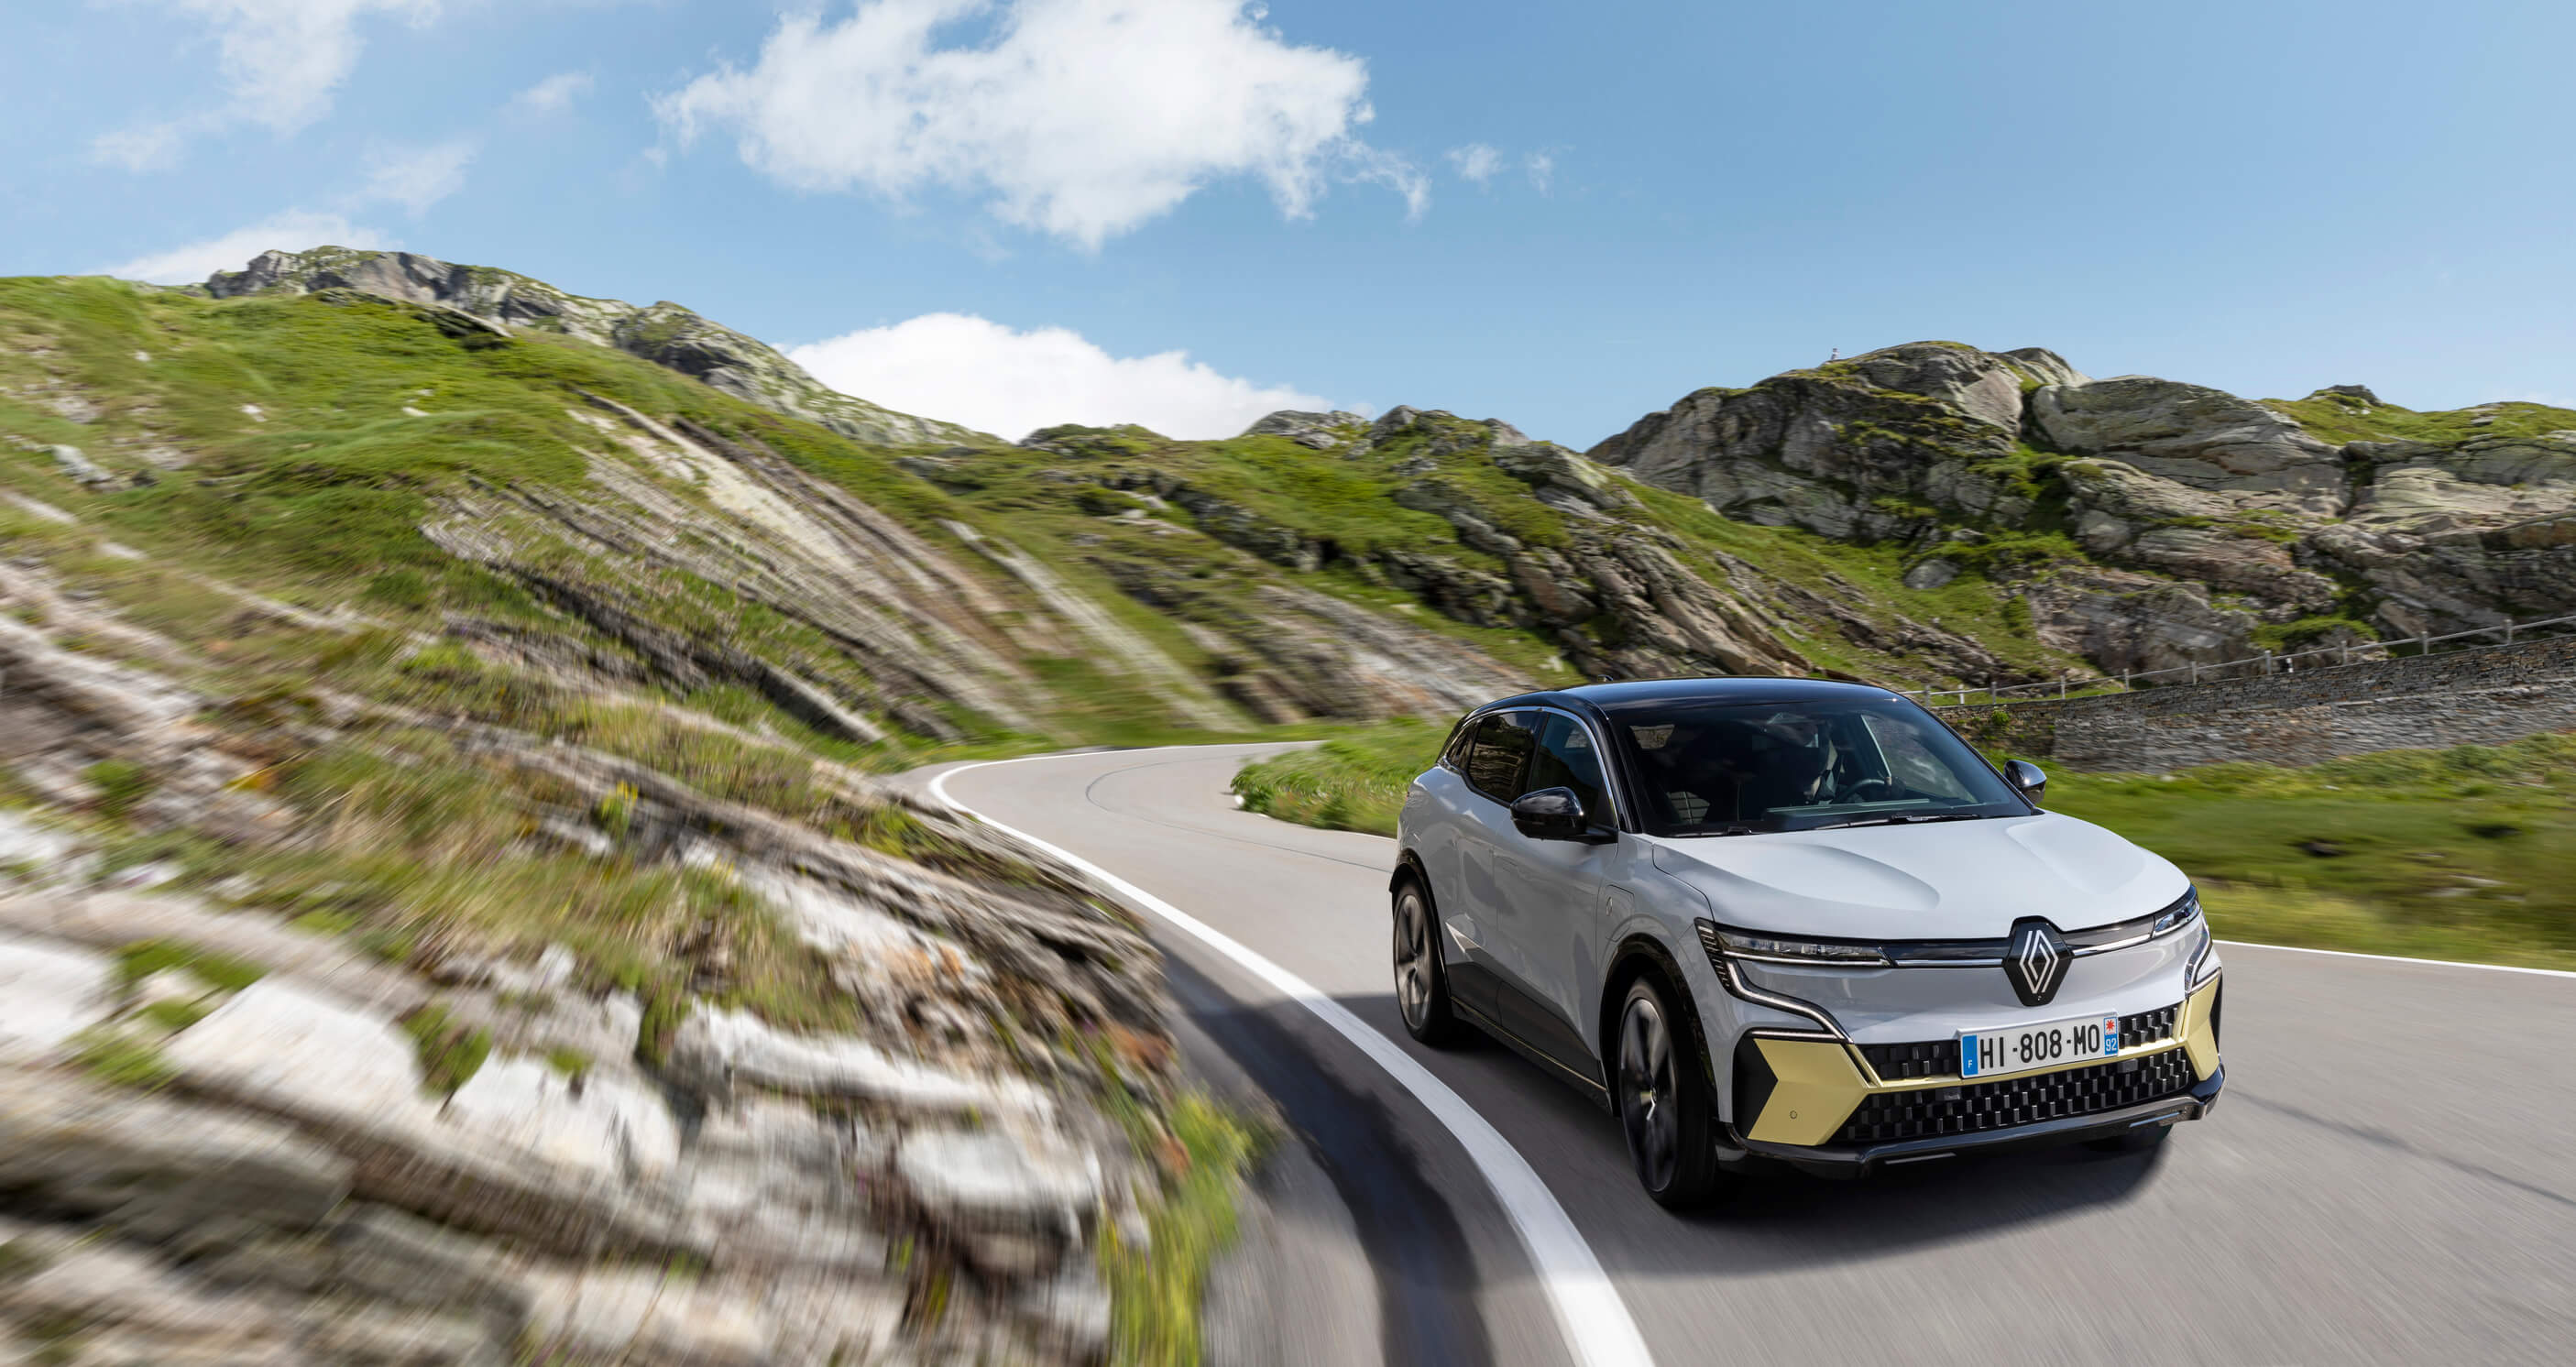 Vorstellung Renault Austral: Mit Hybrid in die Zukunft - mobil sein